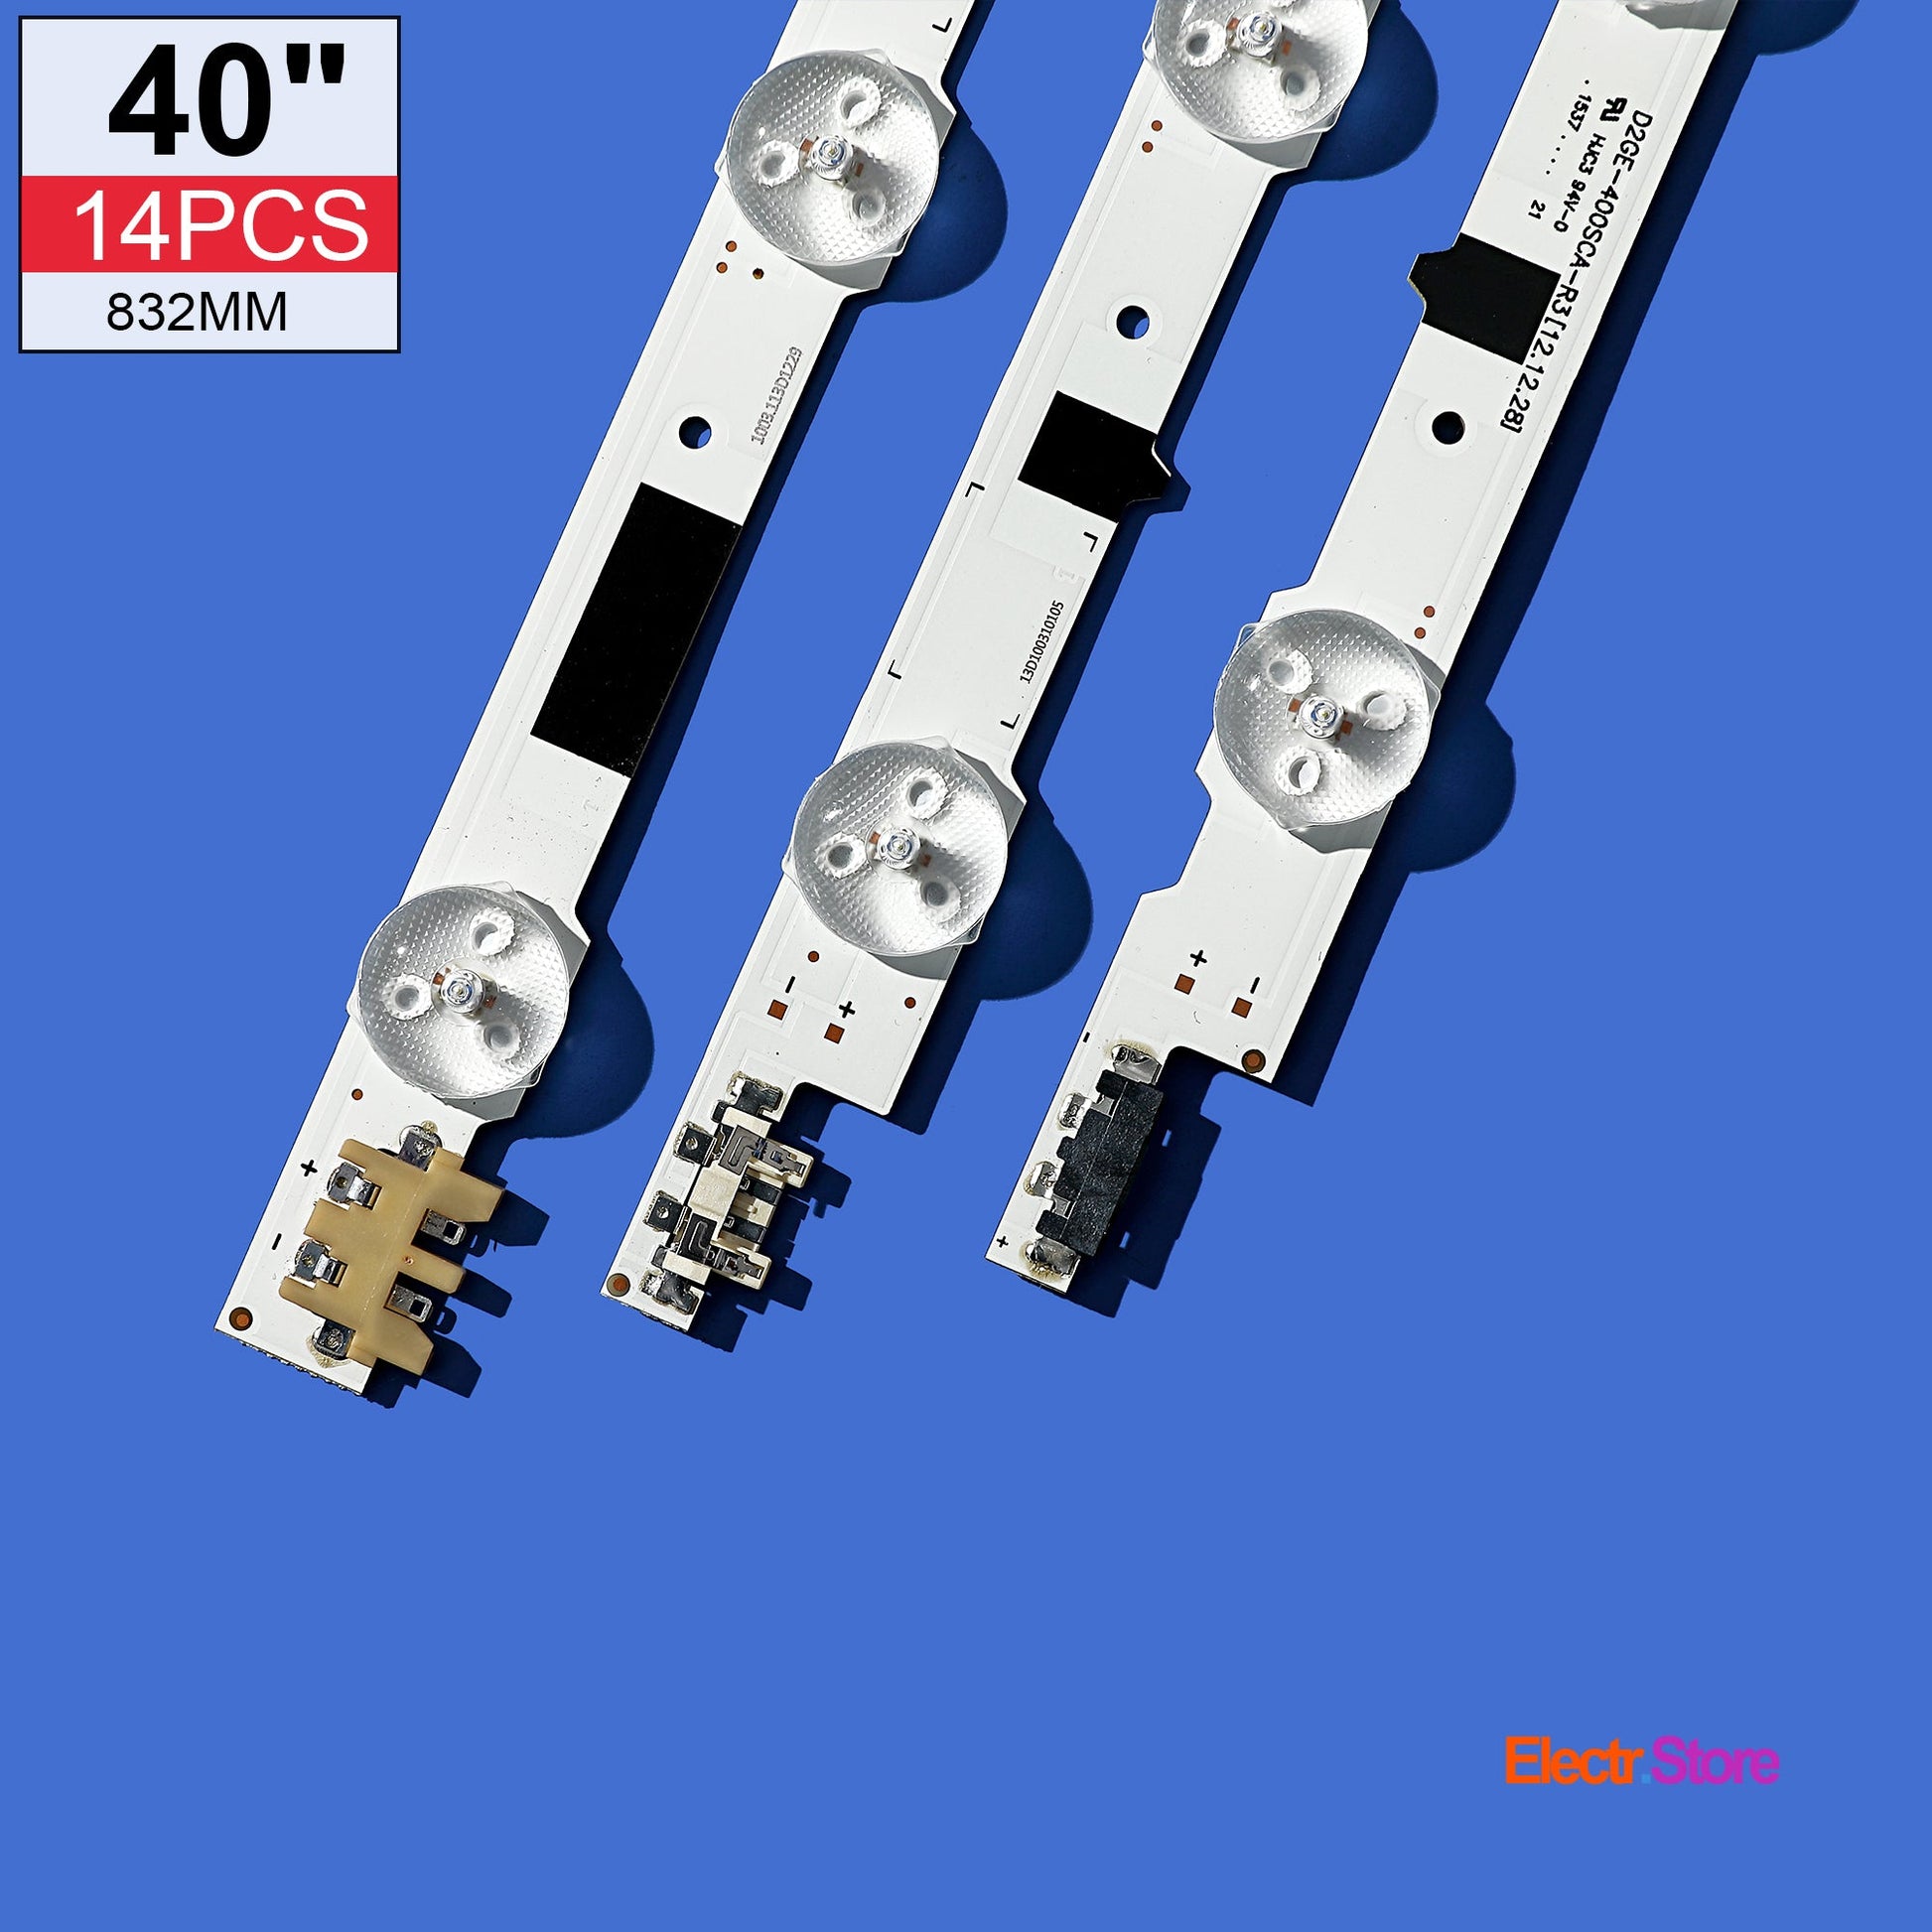 LED Backlight Strip Kits, 2013SVS40F, D2GE-400SCA-R3/D2GE-400SCB-R3, BN96-25304A/BN96-25305A (14 pc/kit), for TV 40" PANEL: CY-HF400BGLV1H 40" D2GE-400SCA-R3 D2GE-400SCB-R3 LED Backlights Samsung Electr.Store